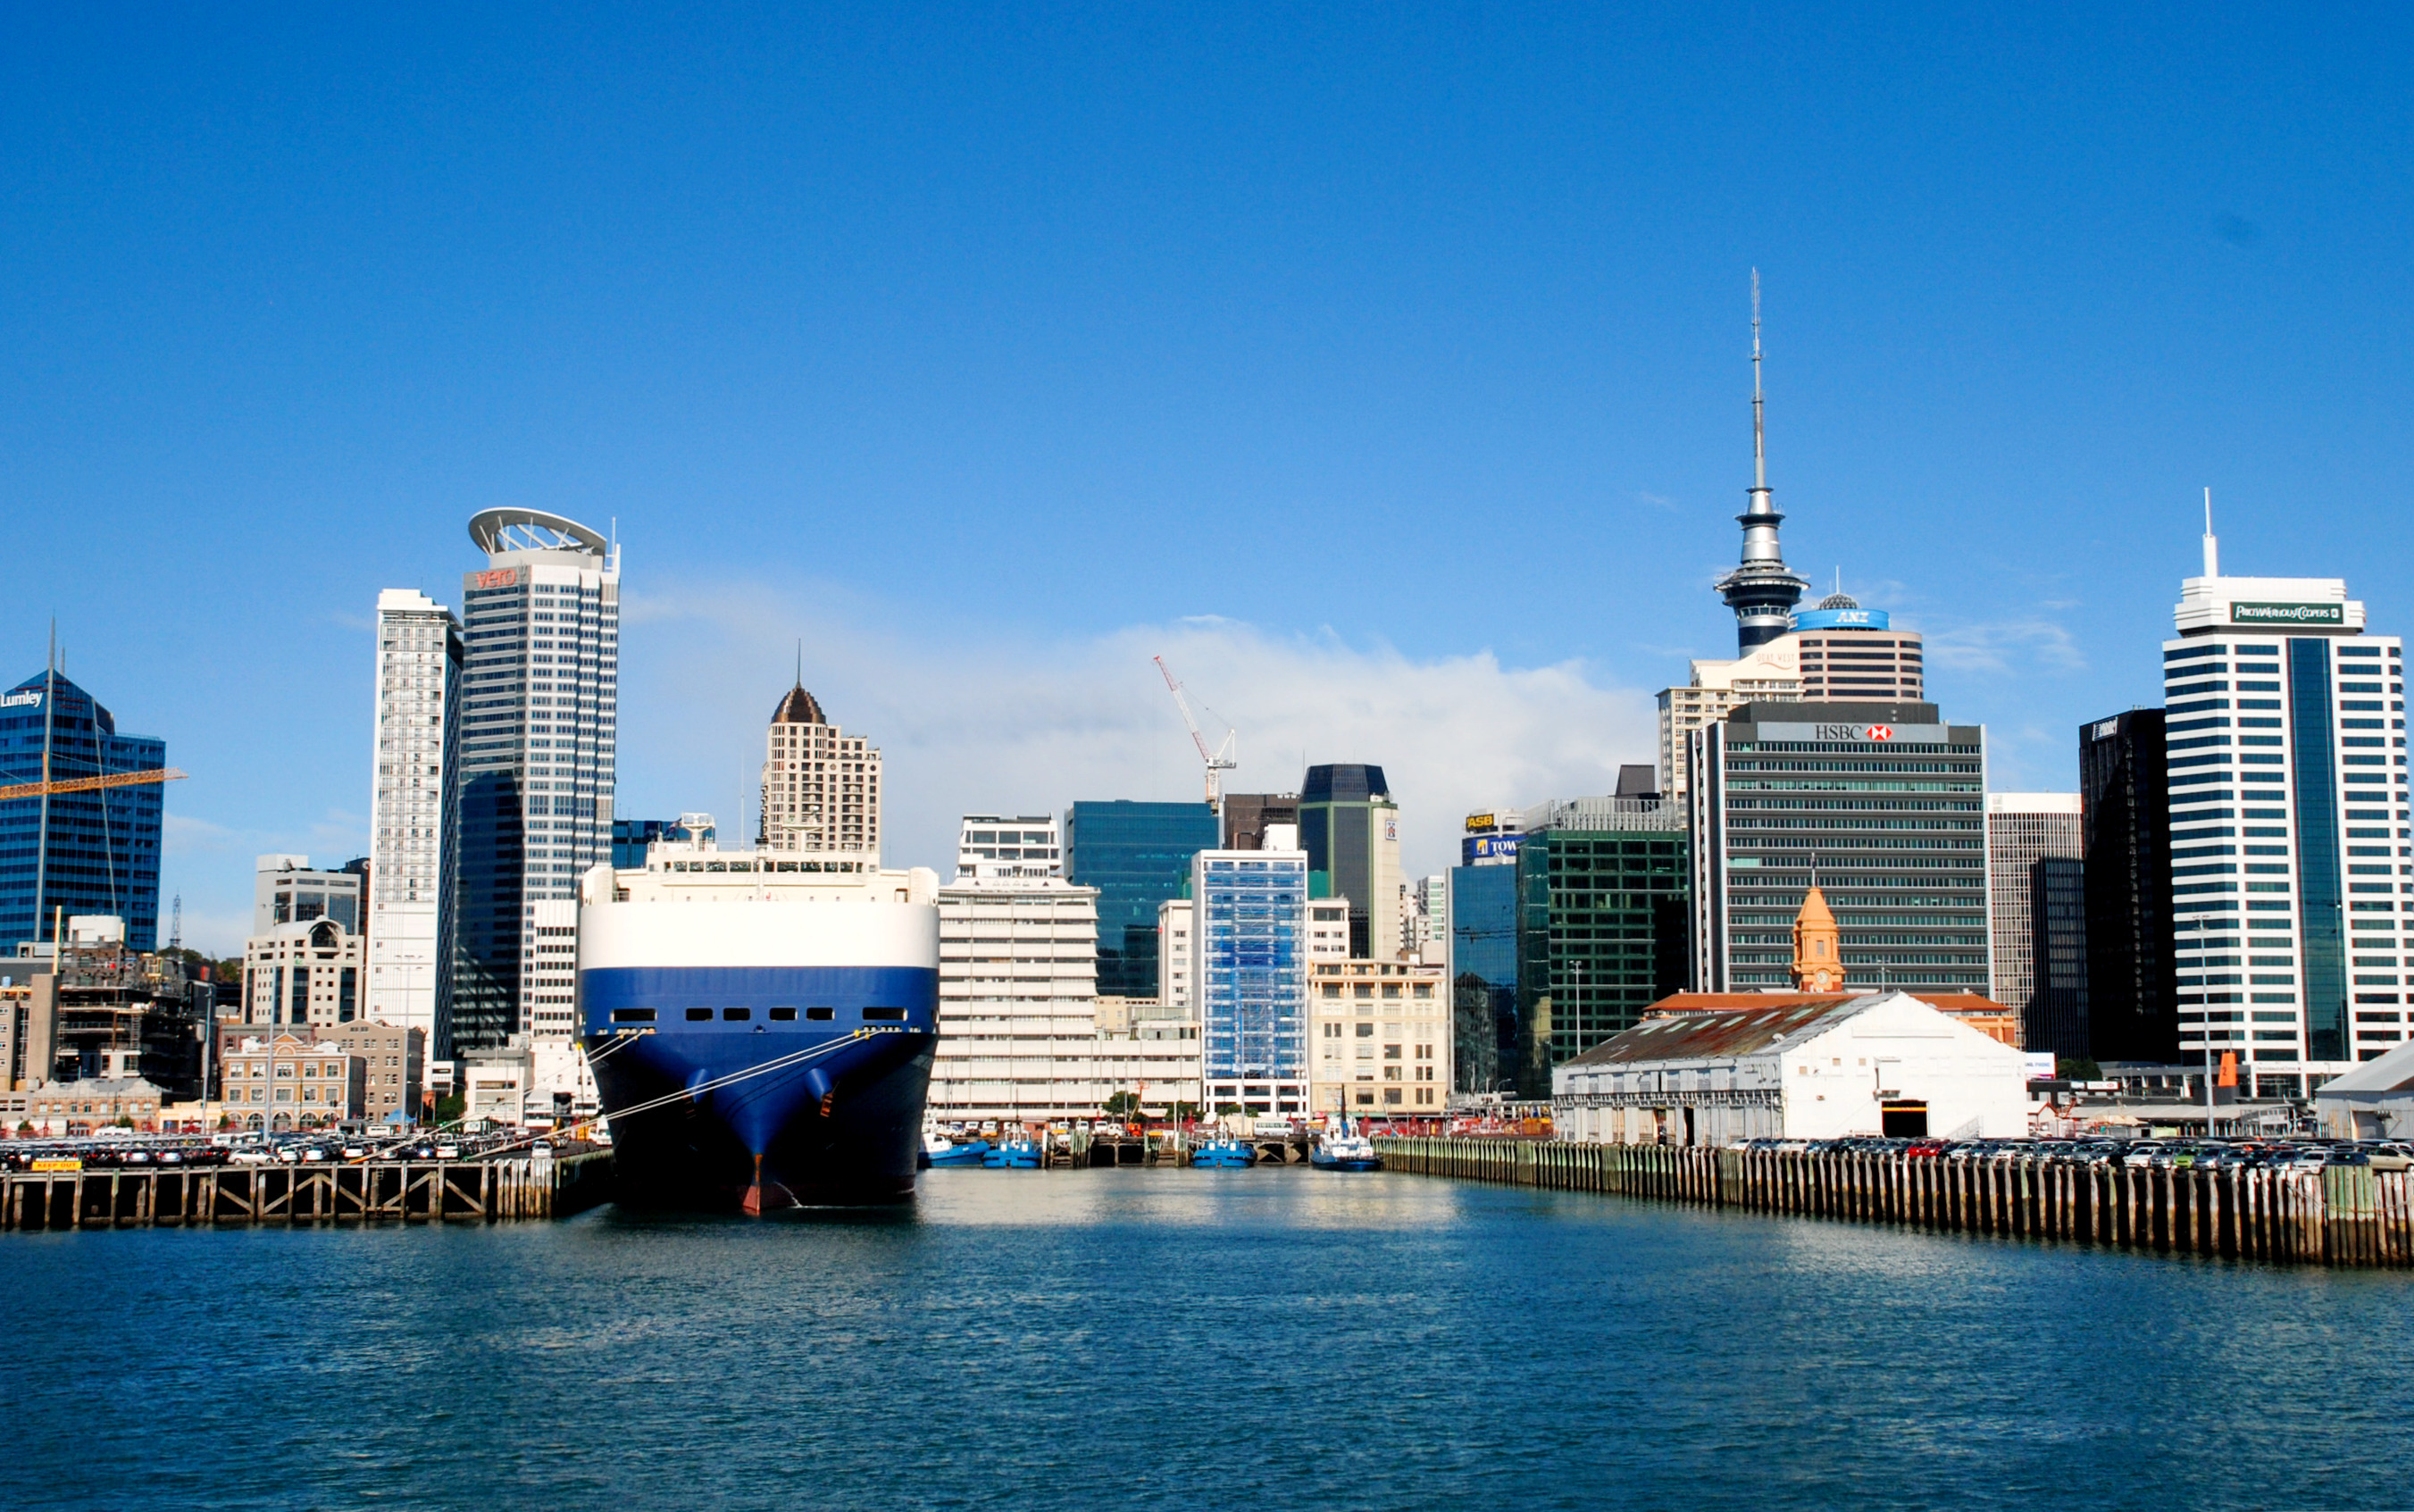 奥克兰市cbd,整个新西兰最繁华的地方,放到国内什么水平